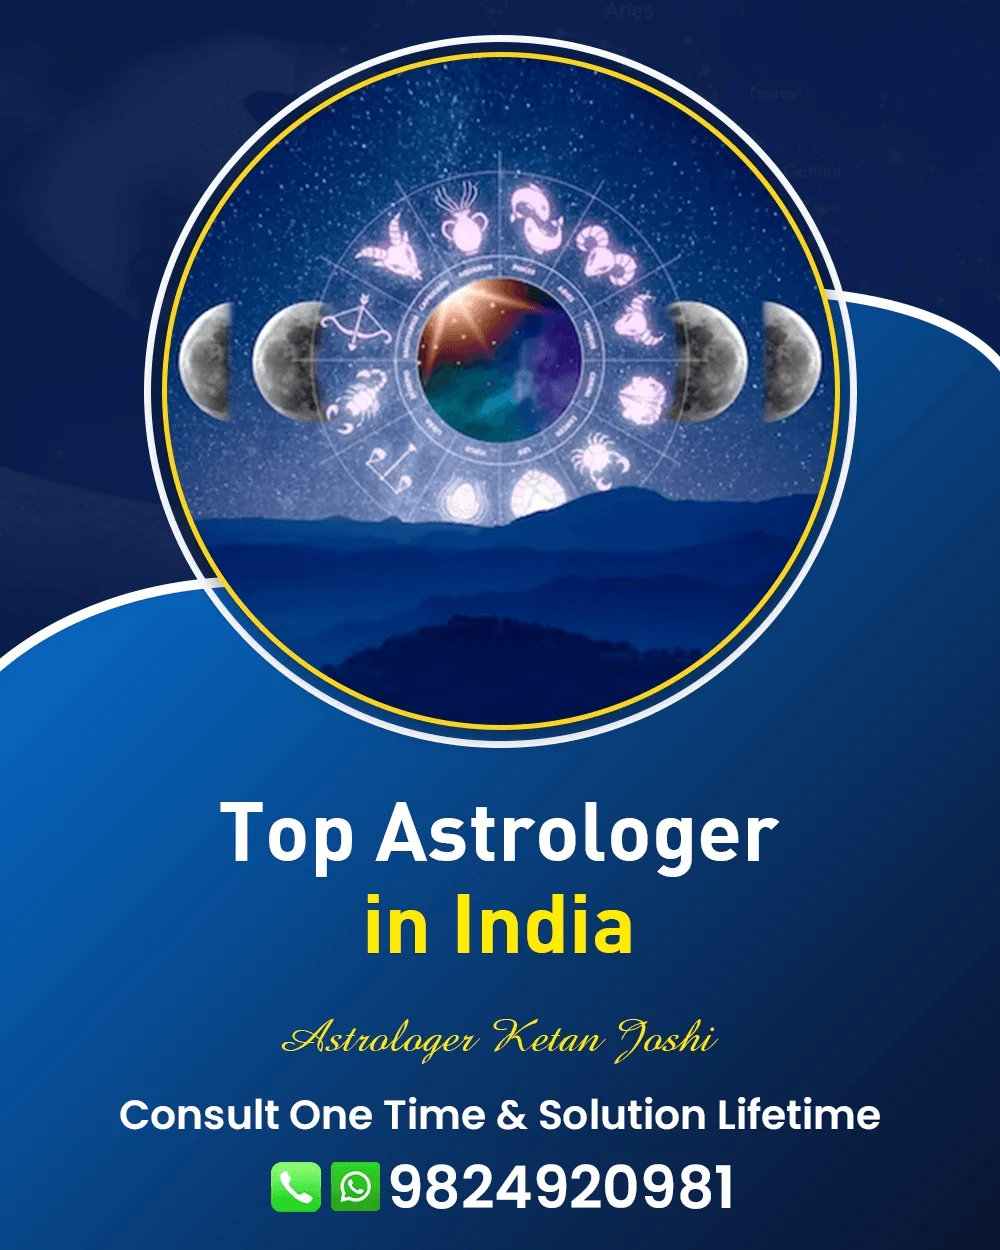 Best Astrologer In Chandigarh